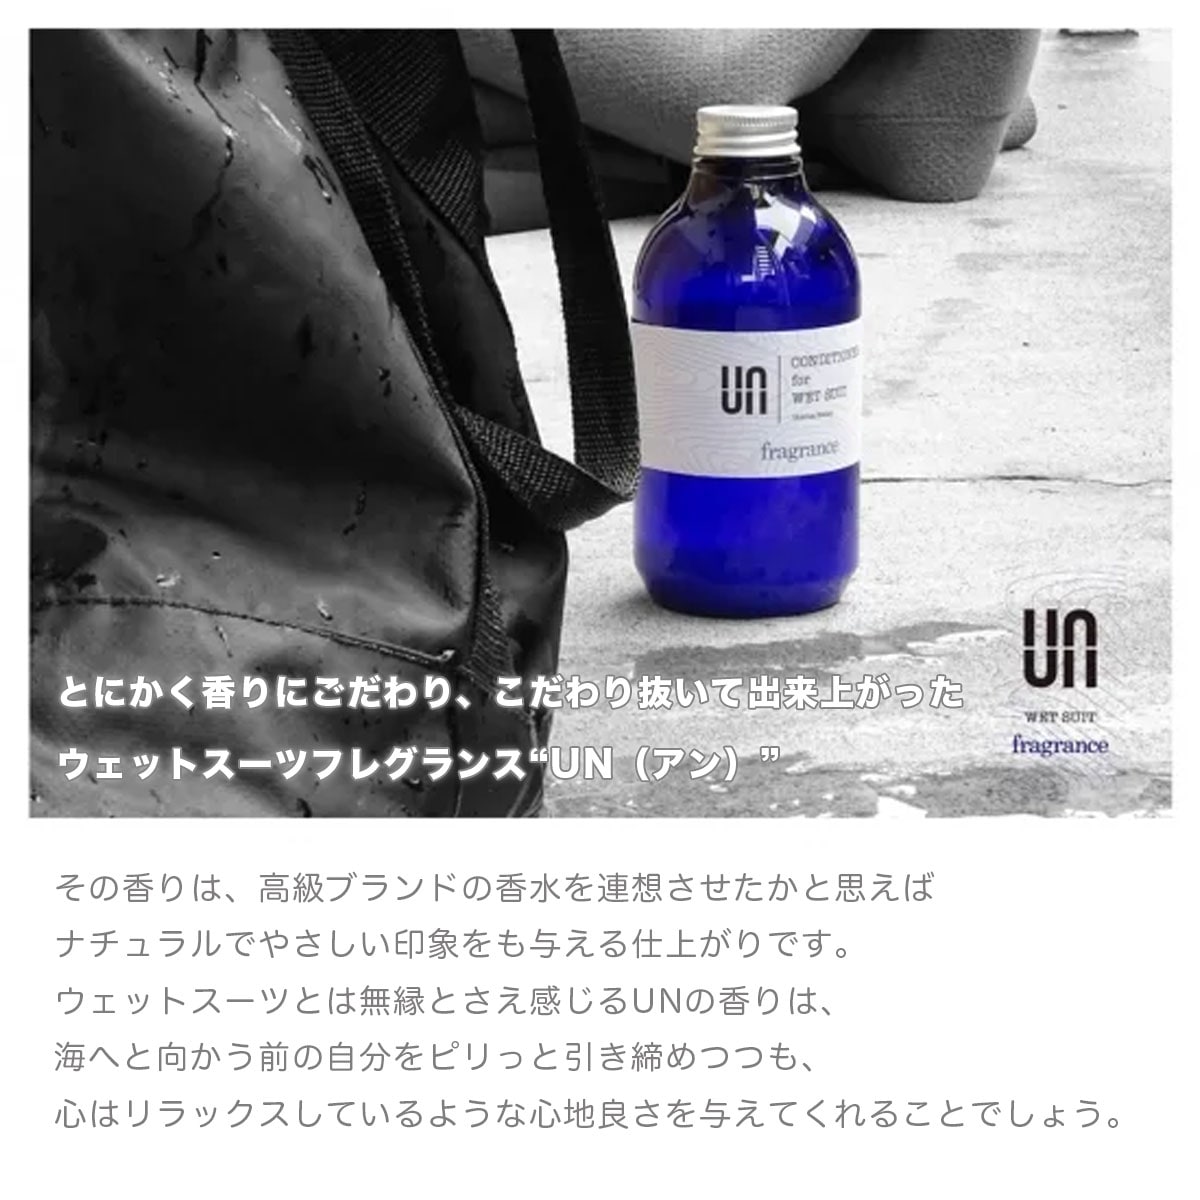 UN Wetsuit Fragrance brand